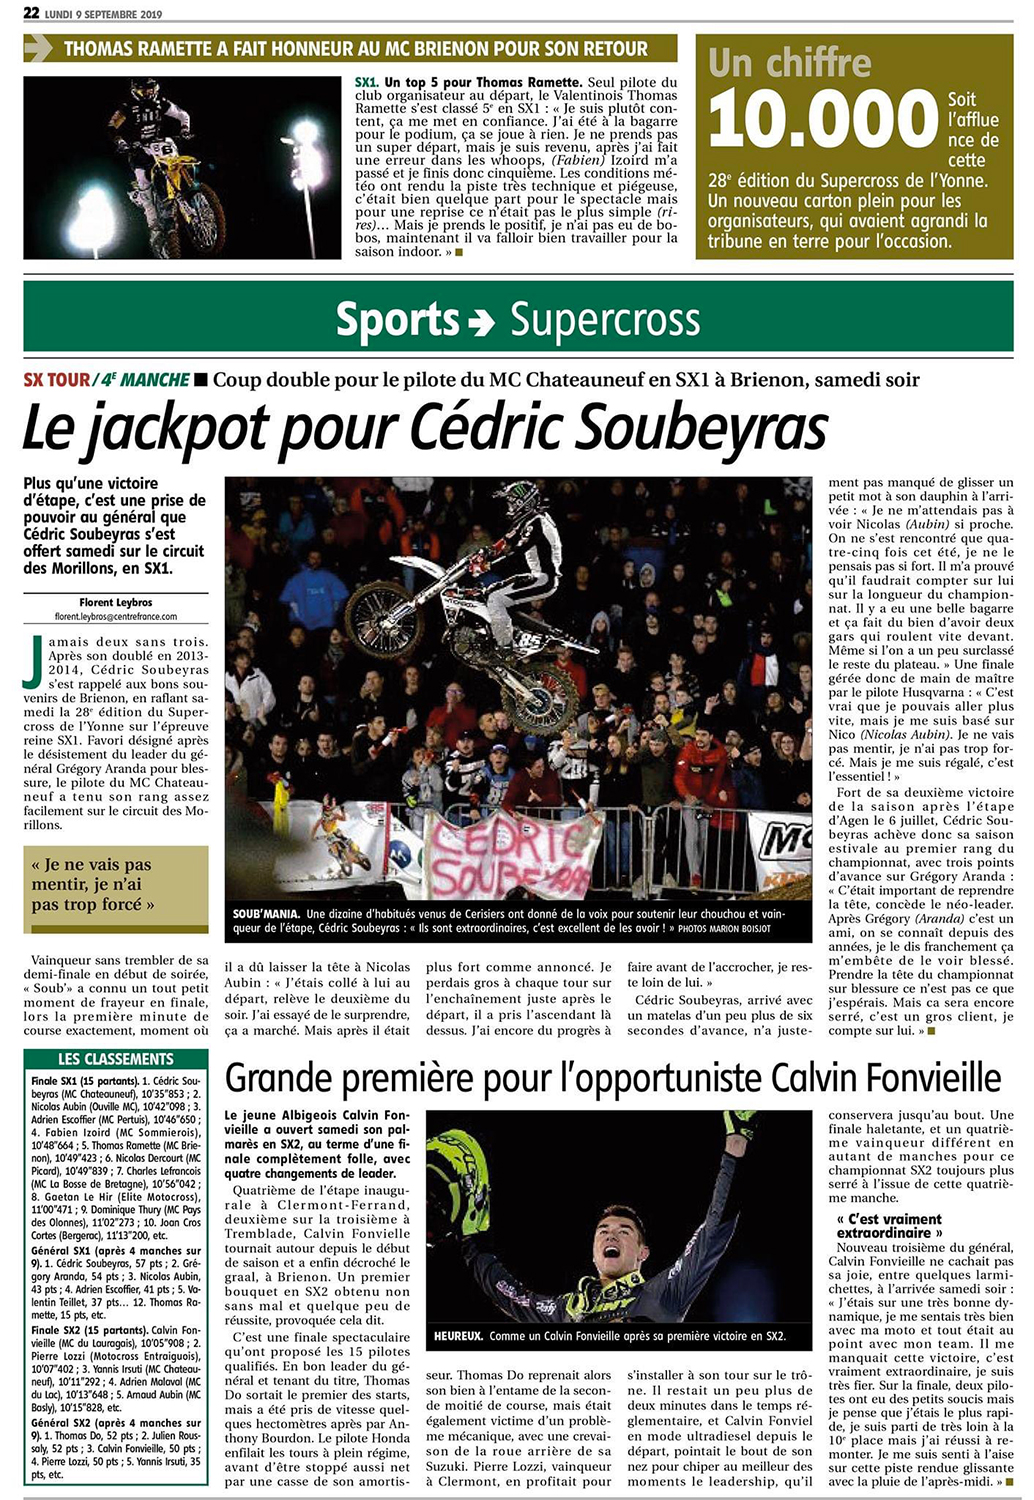 Supercross de l'Yonne 2019 - Article de l'Yonne républicaine du Lundi 9 Septembre